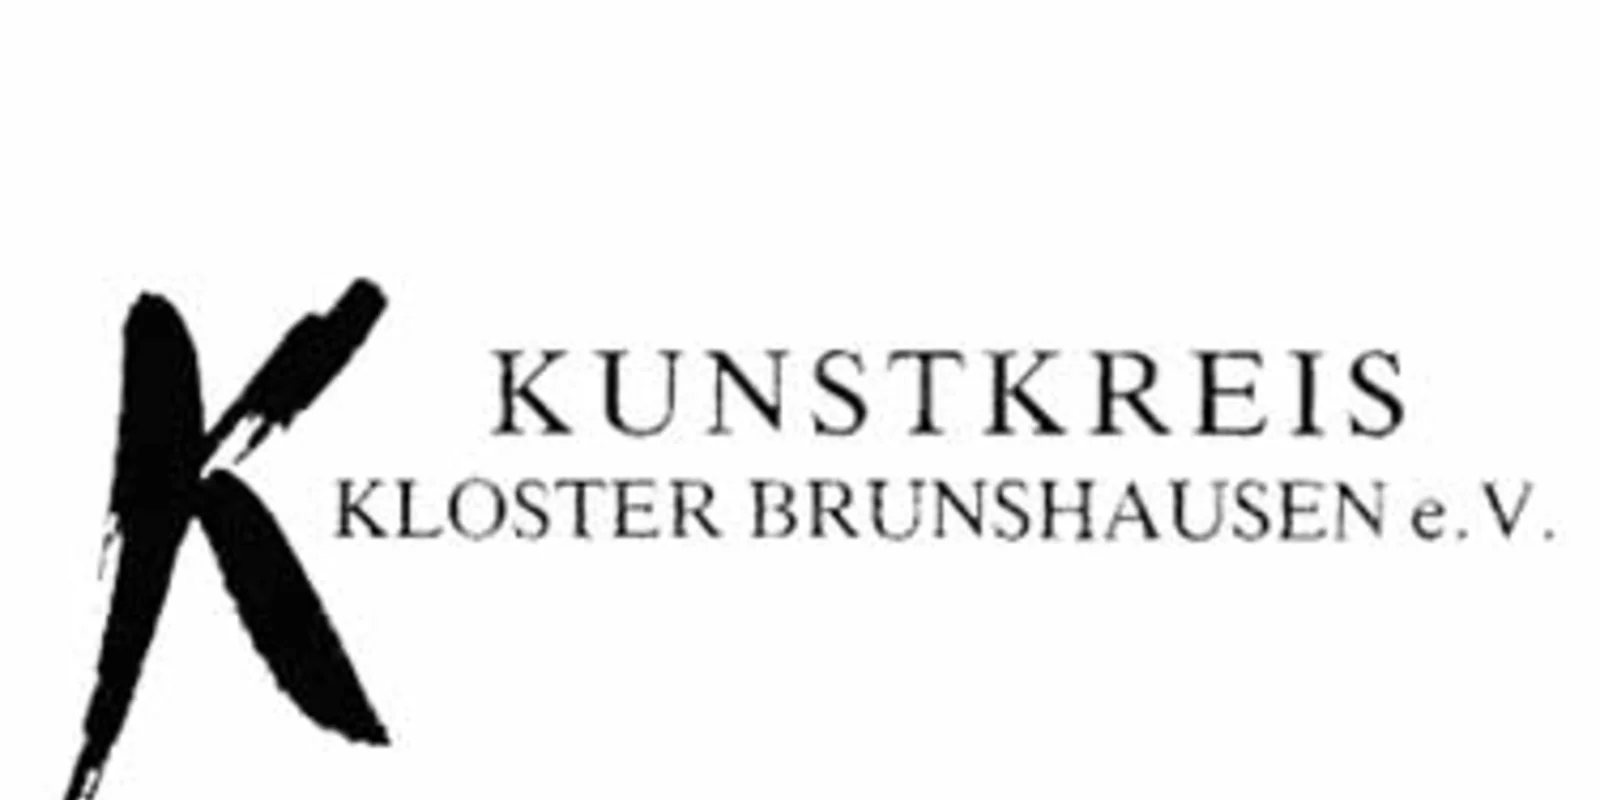 Kunstkreis Kloster brunshausen